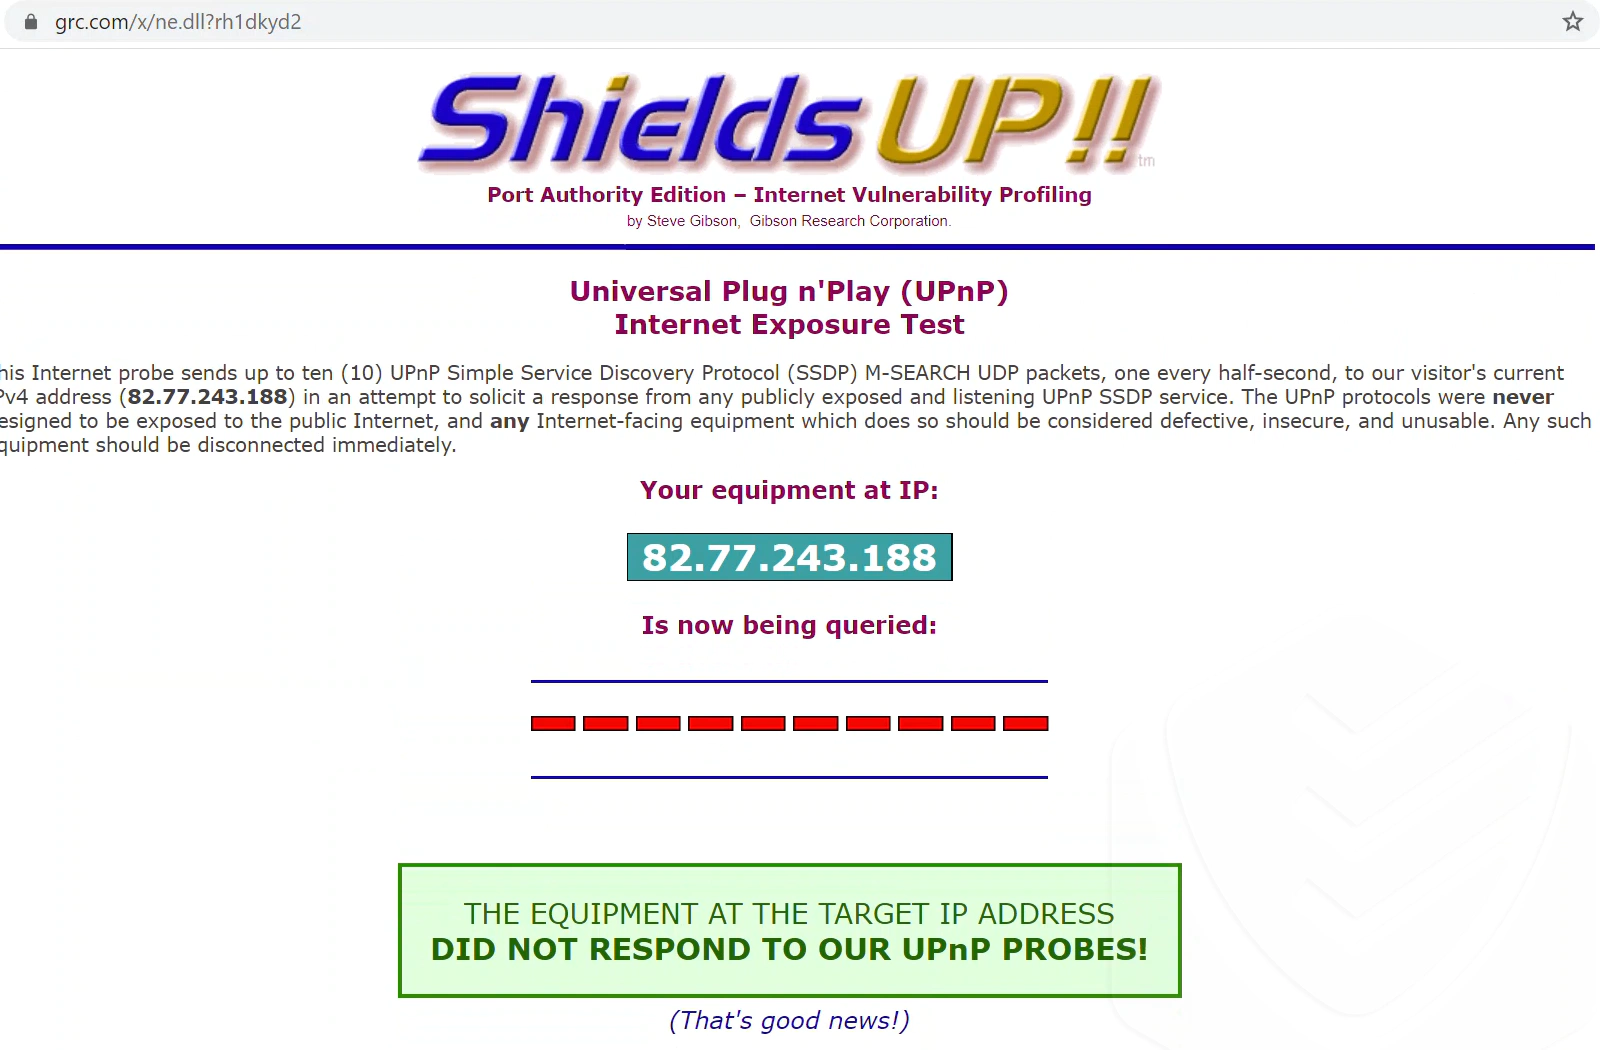 
Wyniki testu przeprowadzonego za pomocą ShieldsUp na zaporze Avasta